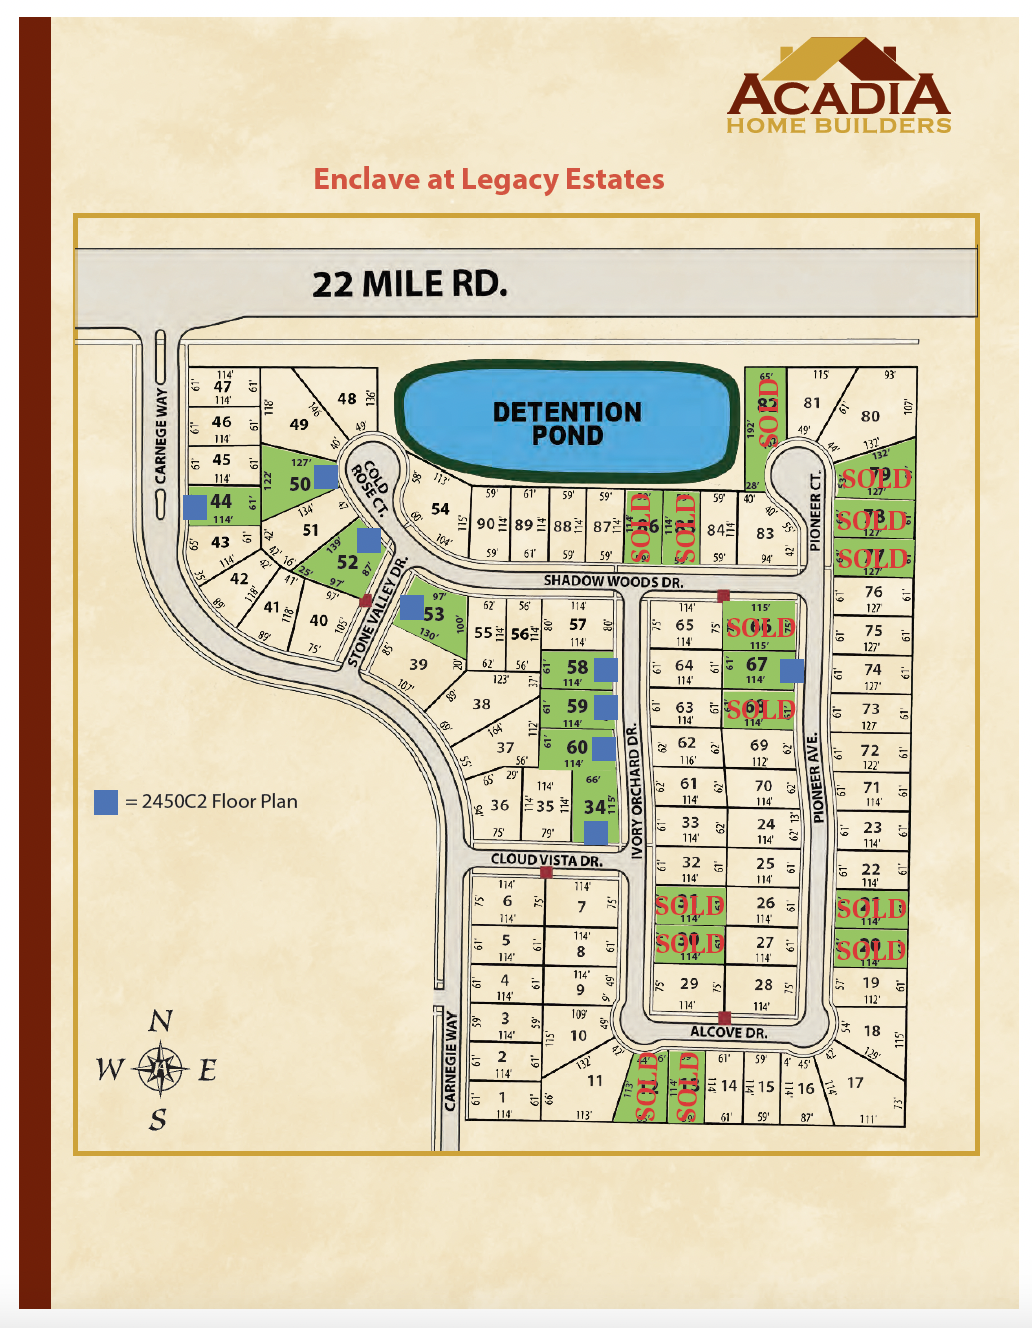 Enclave at Legacy Estates Site Map